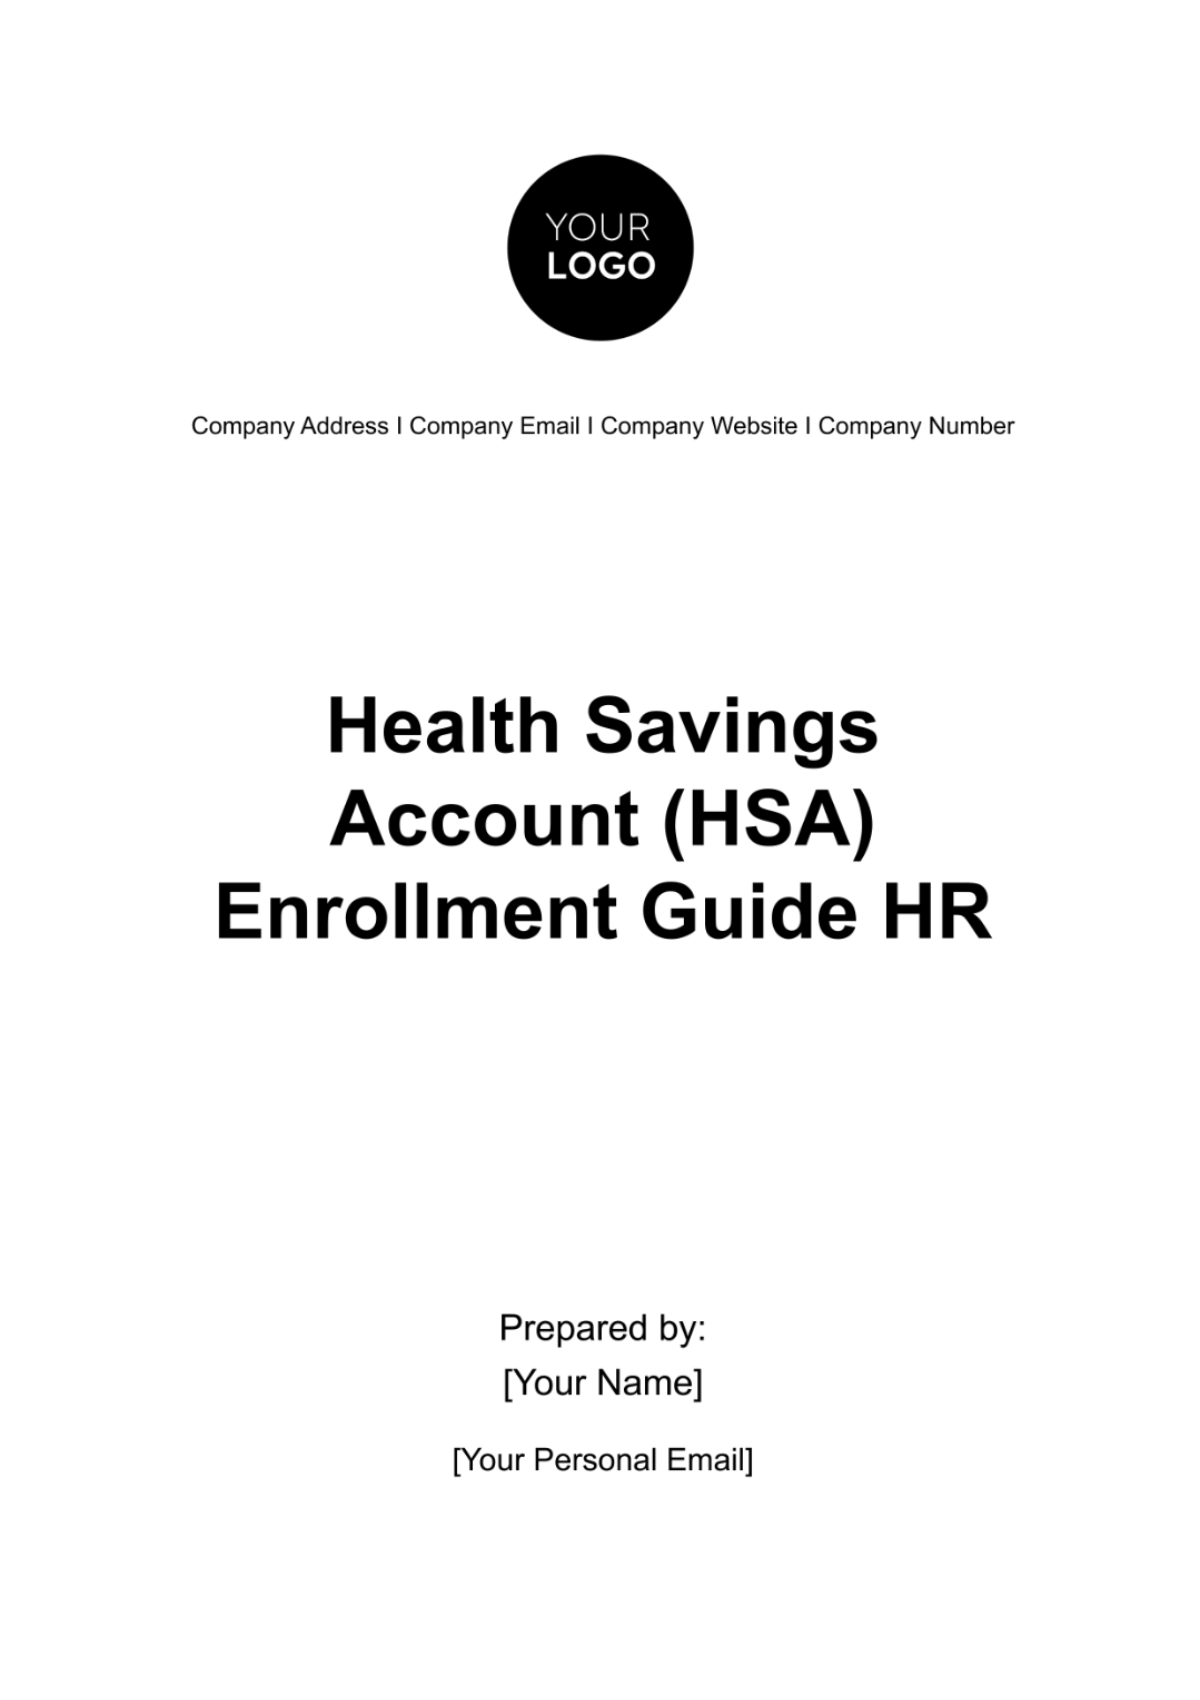 Health Savings Account (HSA) Enrollment Guide HR Template